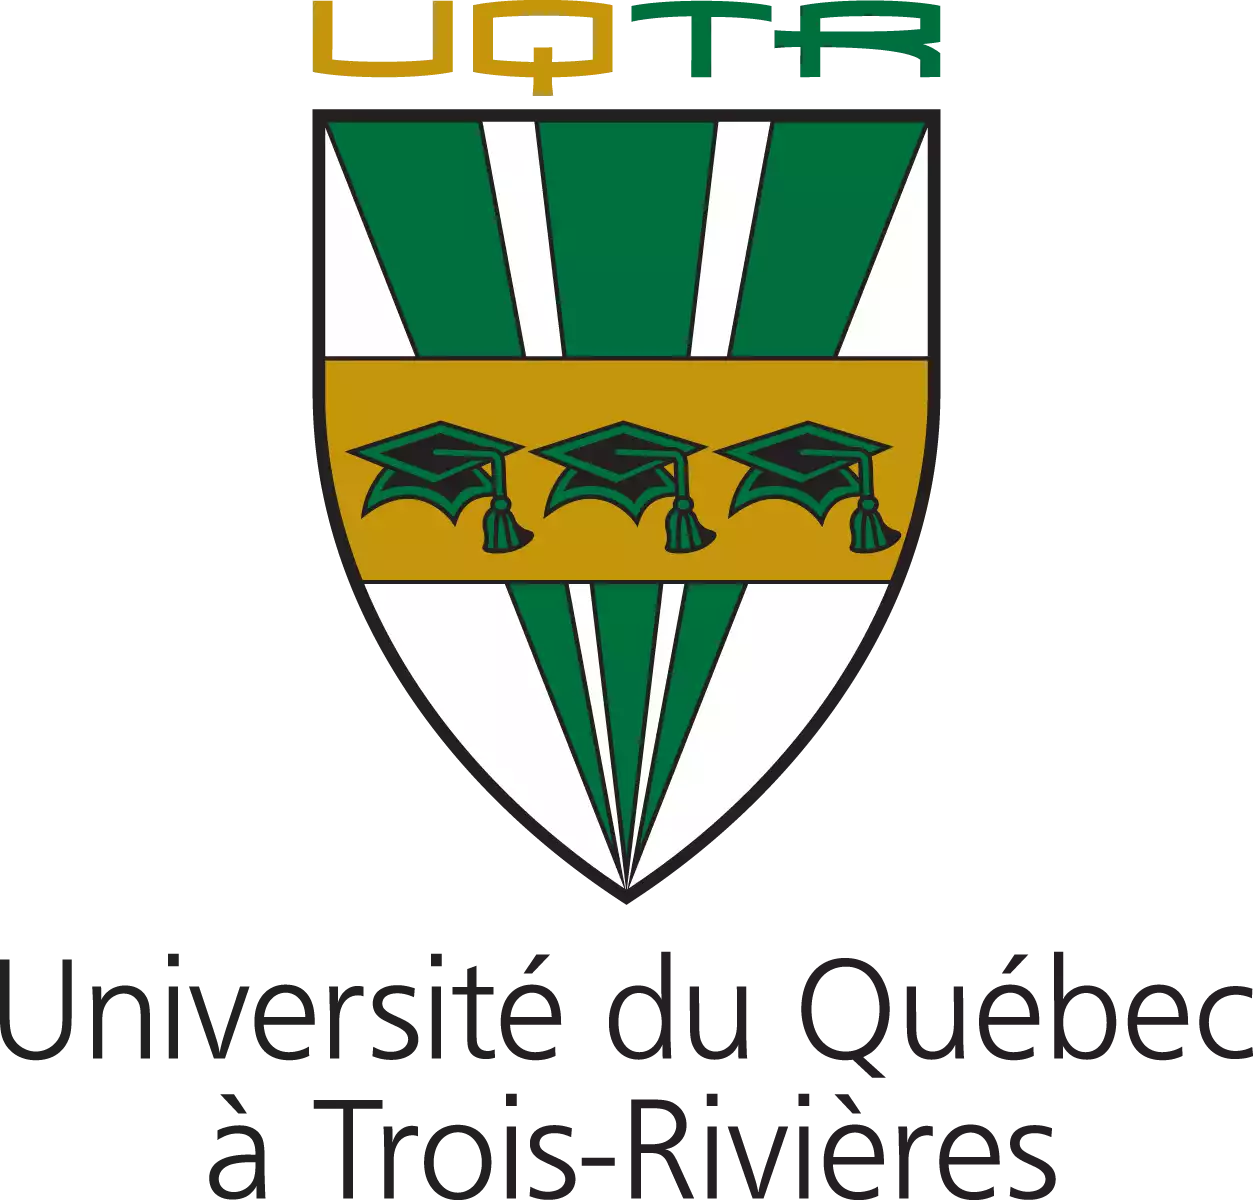 University of Quebec at Trois-Rivières (Université du Québec à Trois-Rivières), Canada